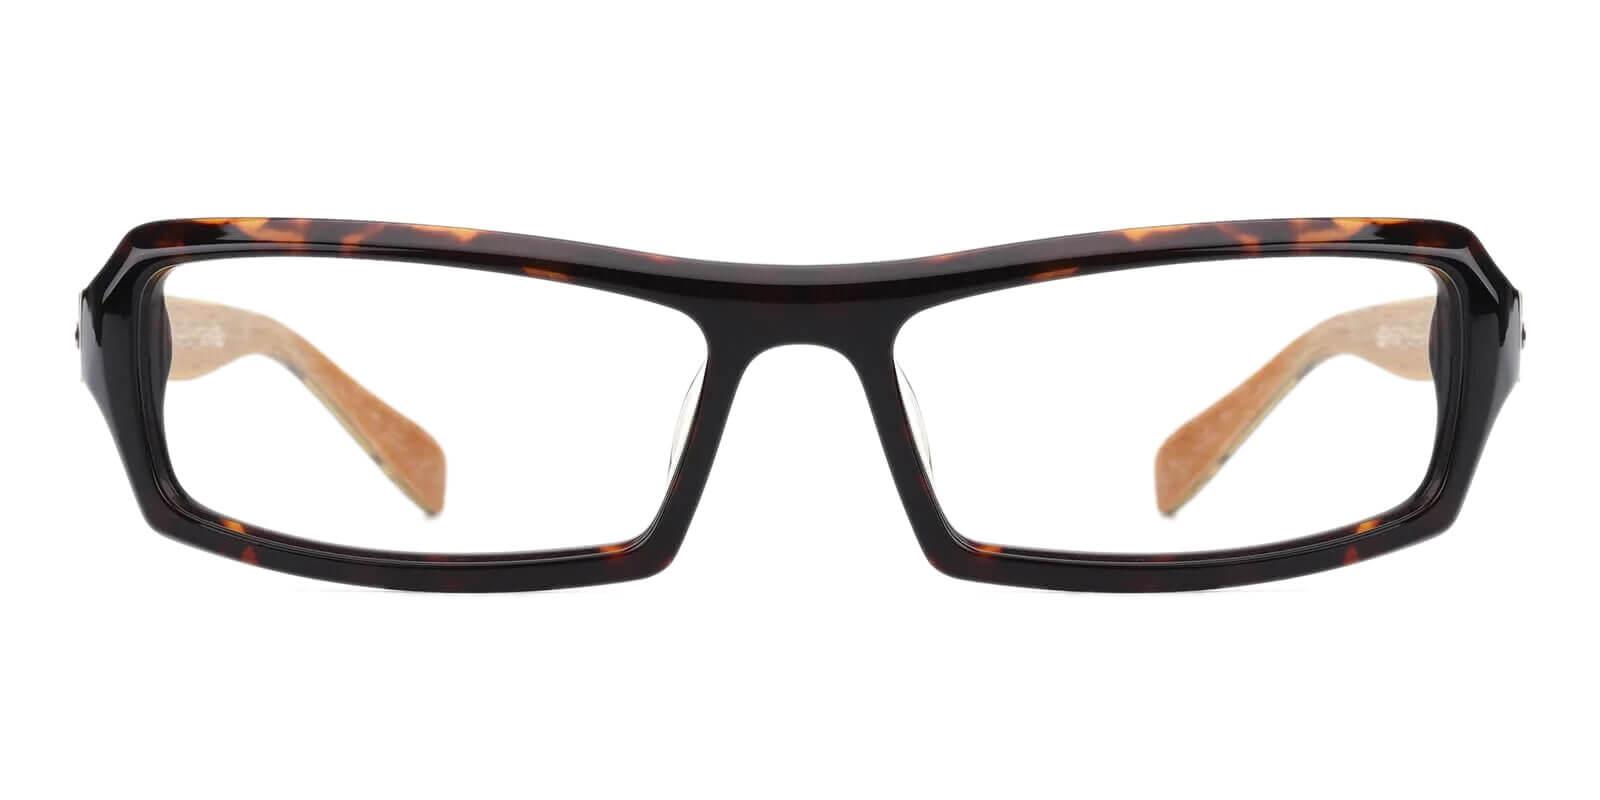 Resonance Tortoise TR Eyeglasses , UniversalBridgeFit Frames from ABBE Glasses